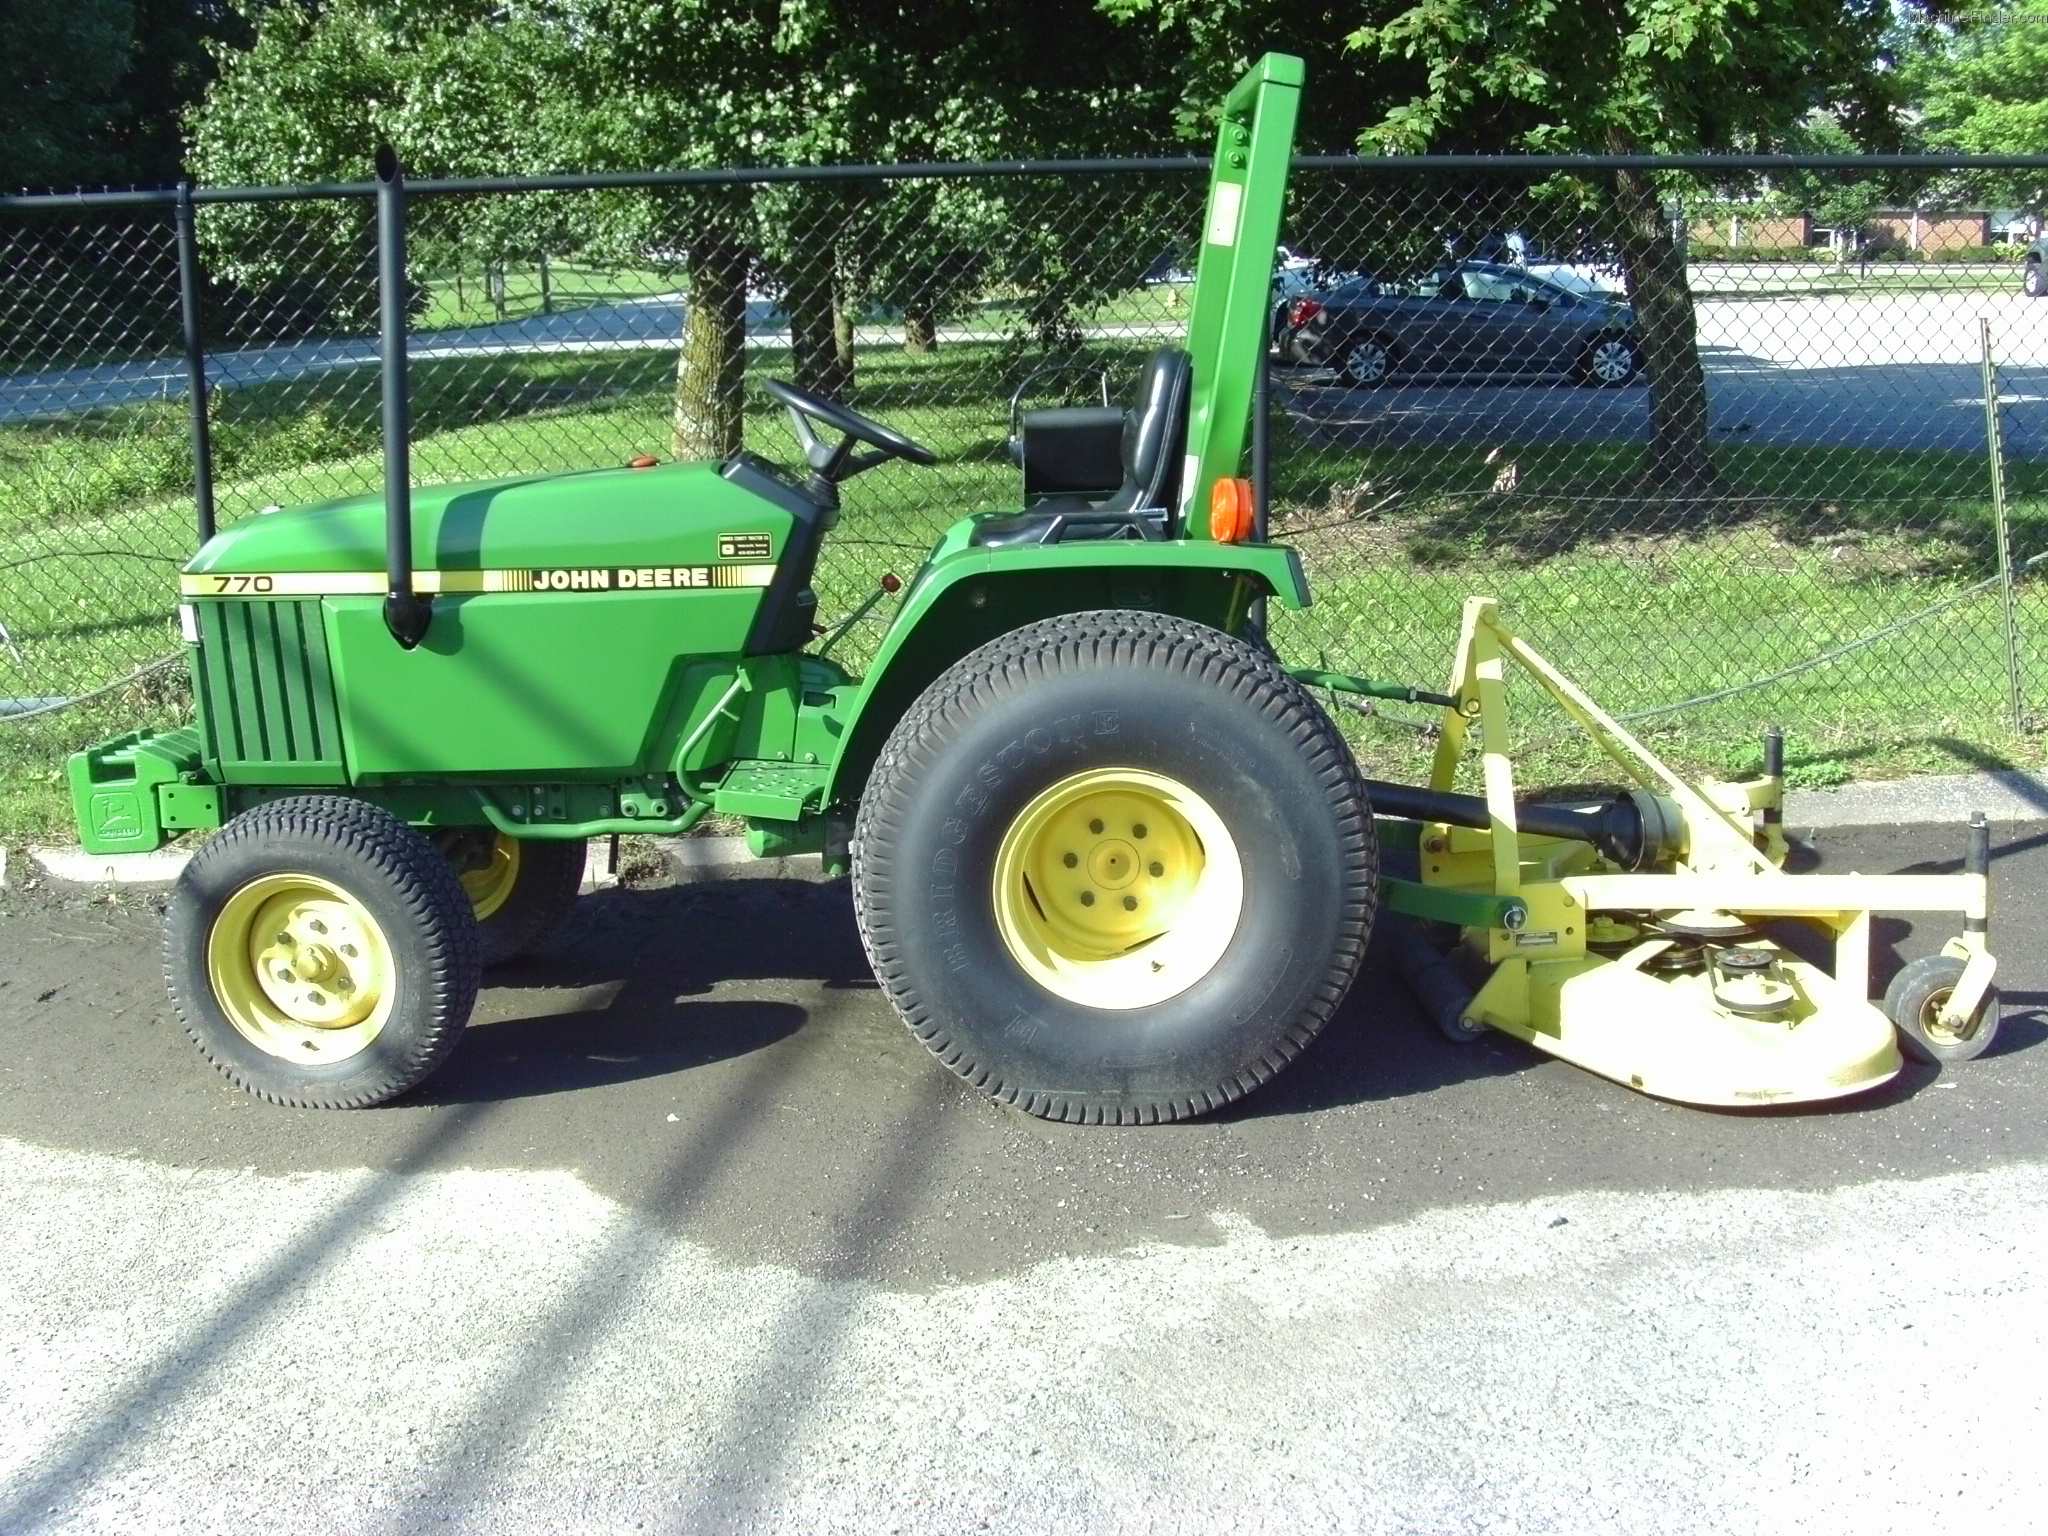 John Deere 770 Tractors - Compact (1-40hp.) - John Deere MachineFinder